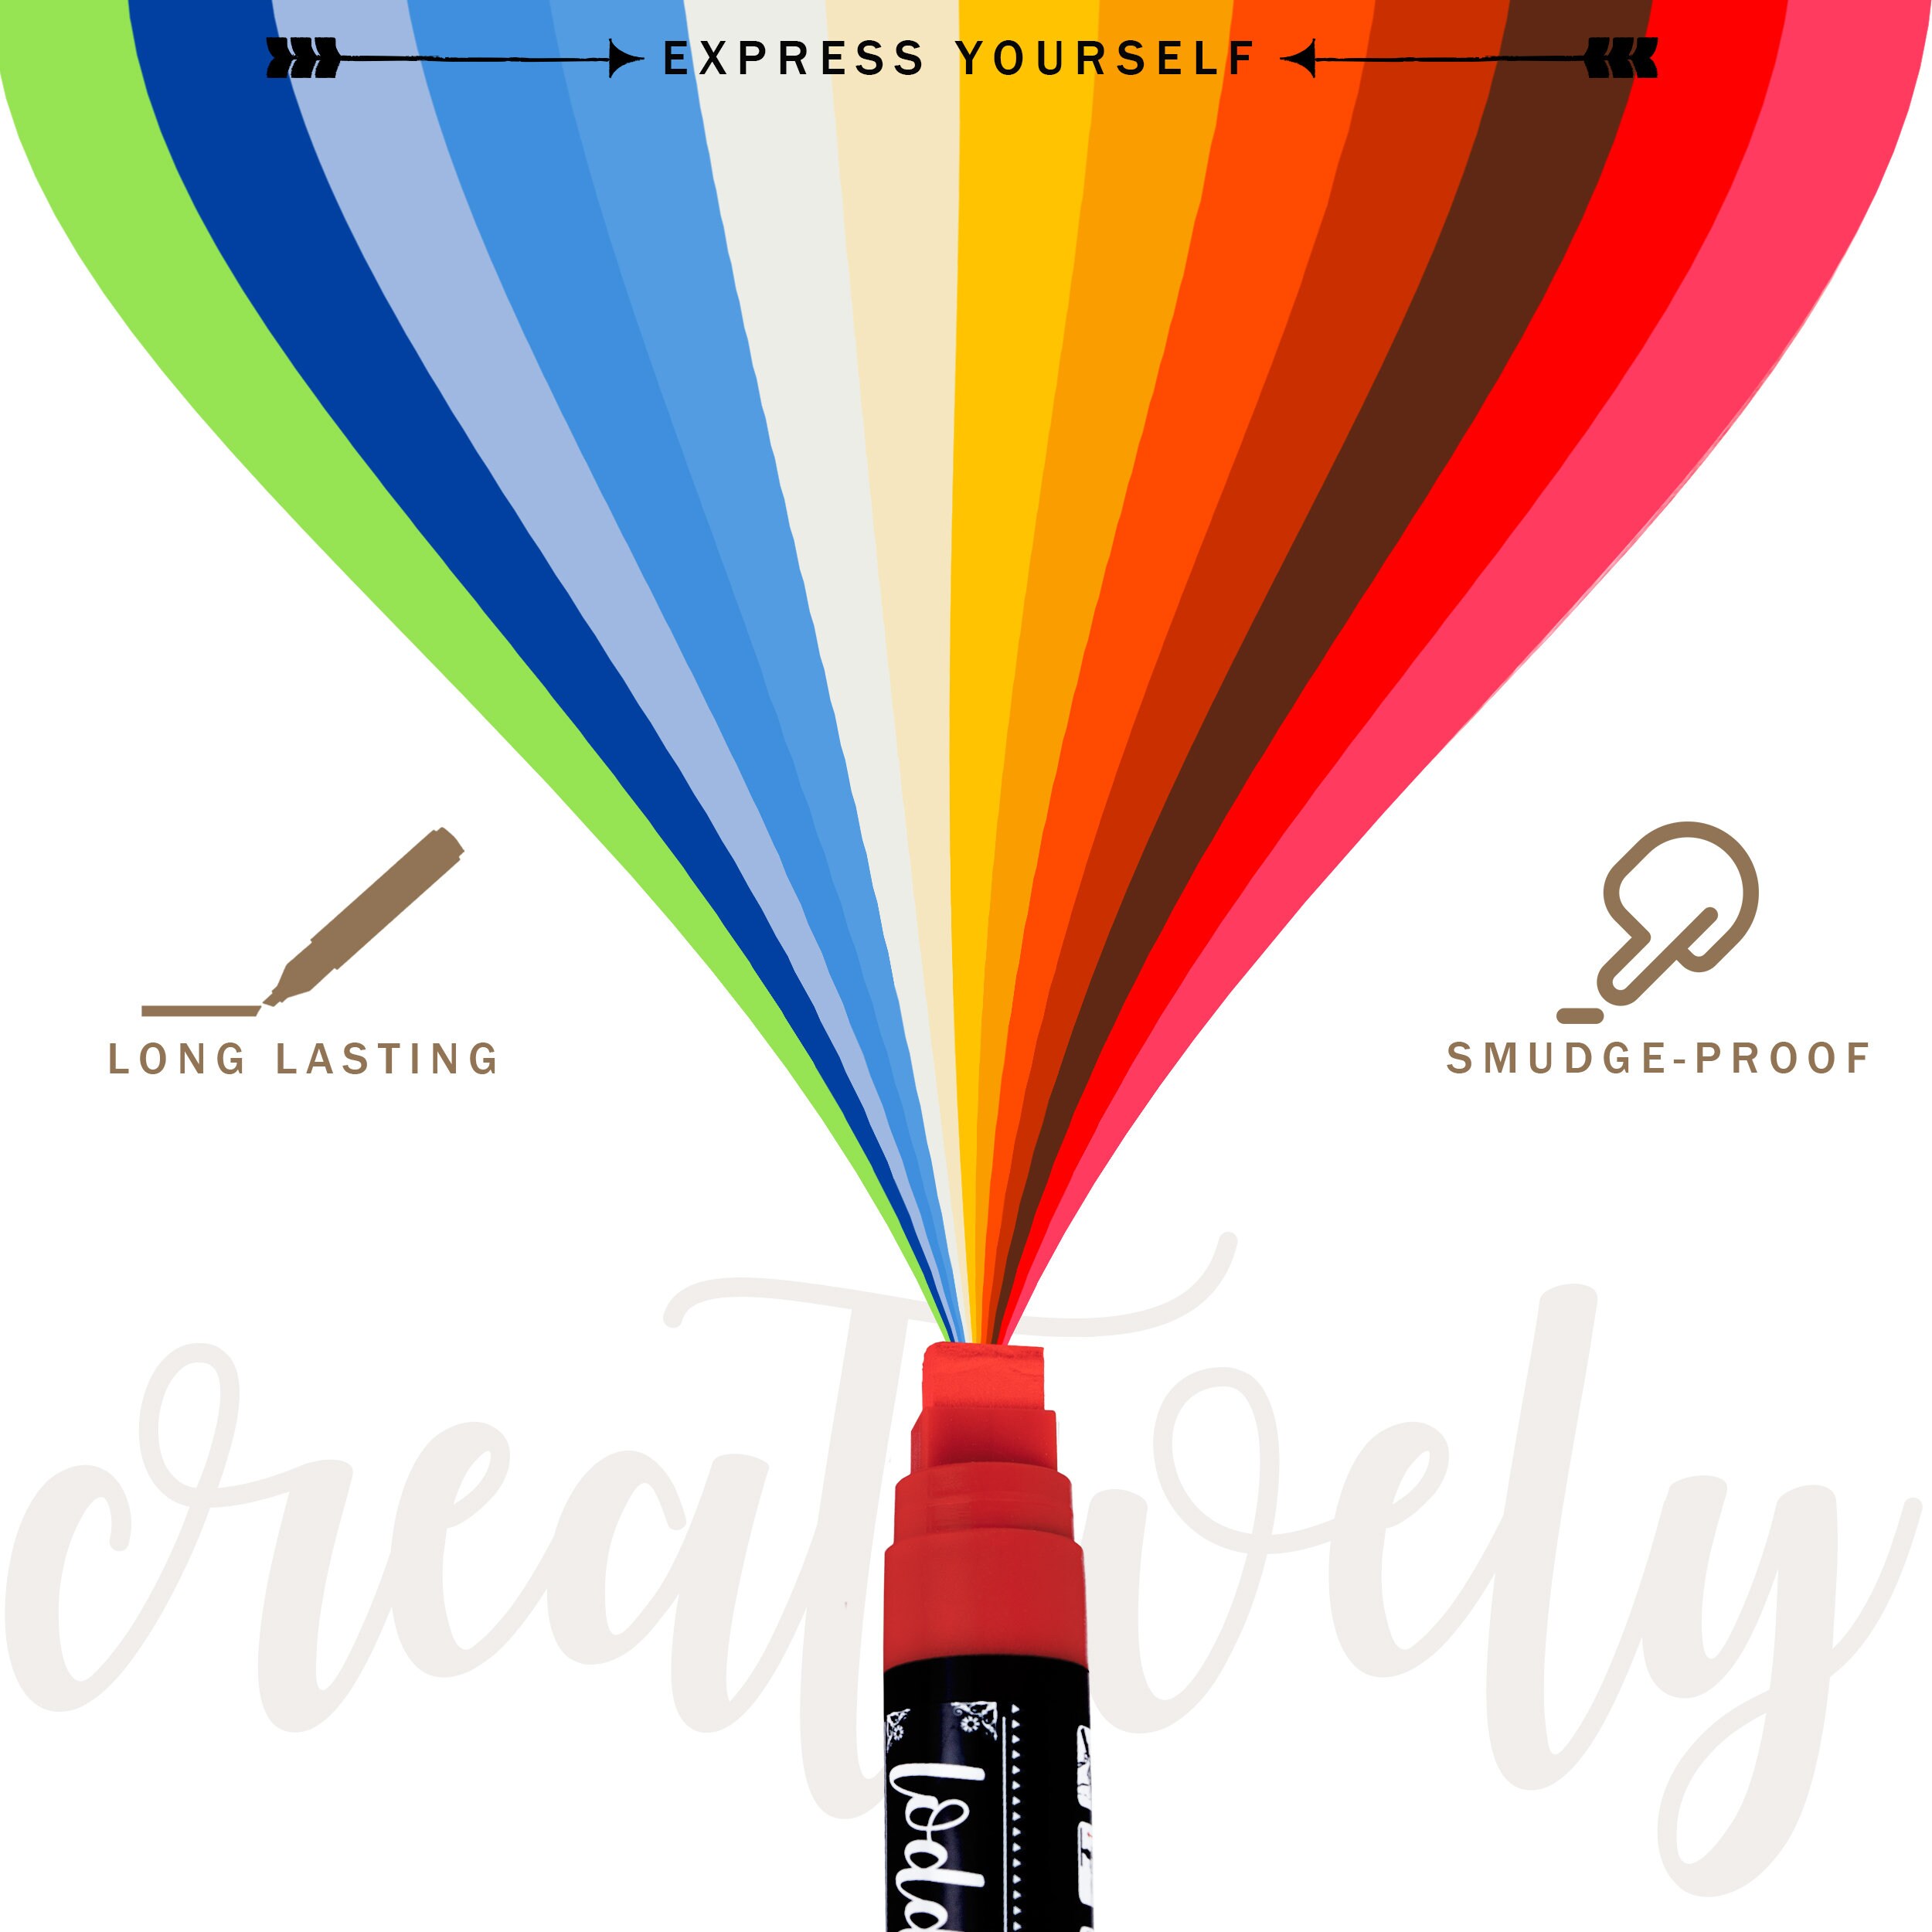 8ct Liquid Chalk Markers- Macaron Pastel MultiColors by Loddie Doddie